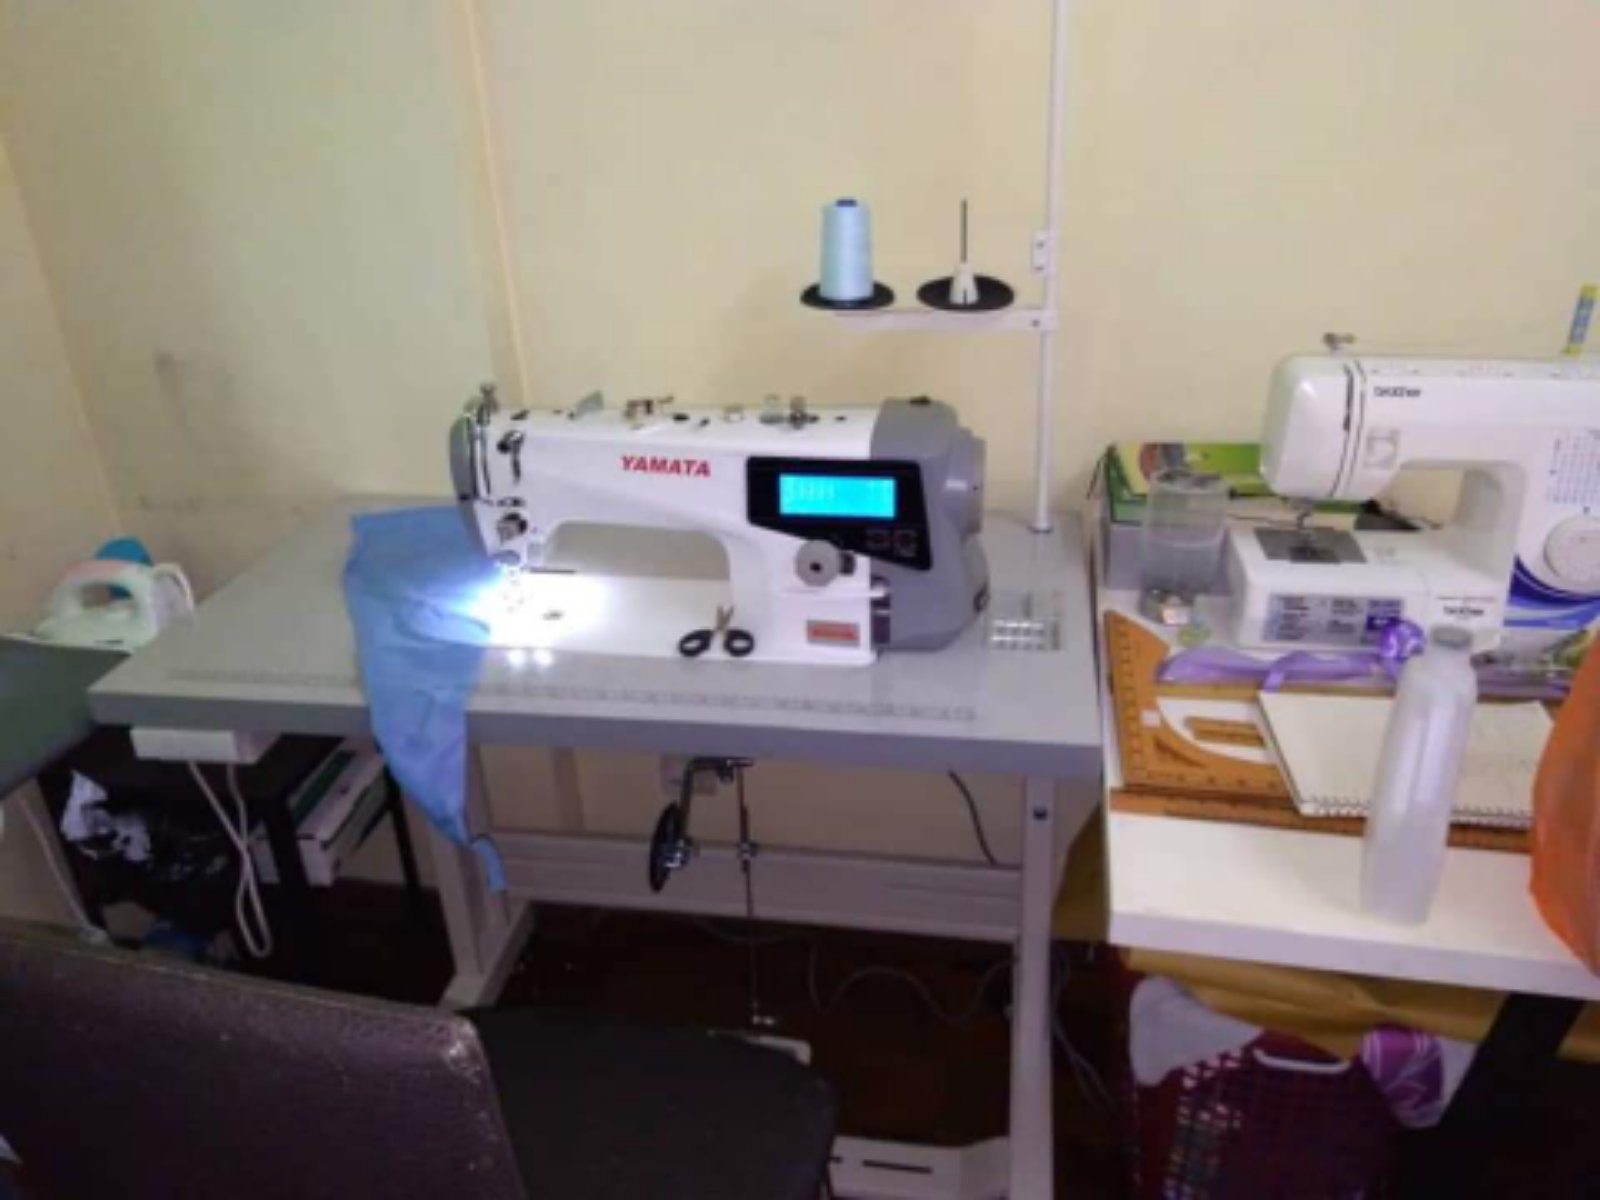 Yamata Industrial Automatik Direct Drive Motor Sewing Machine 